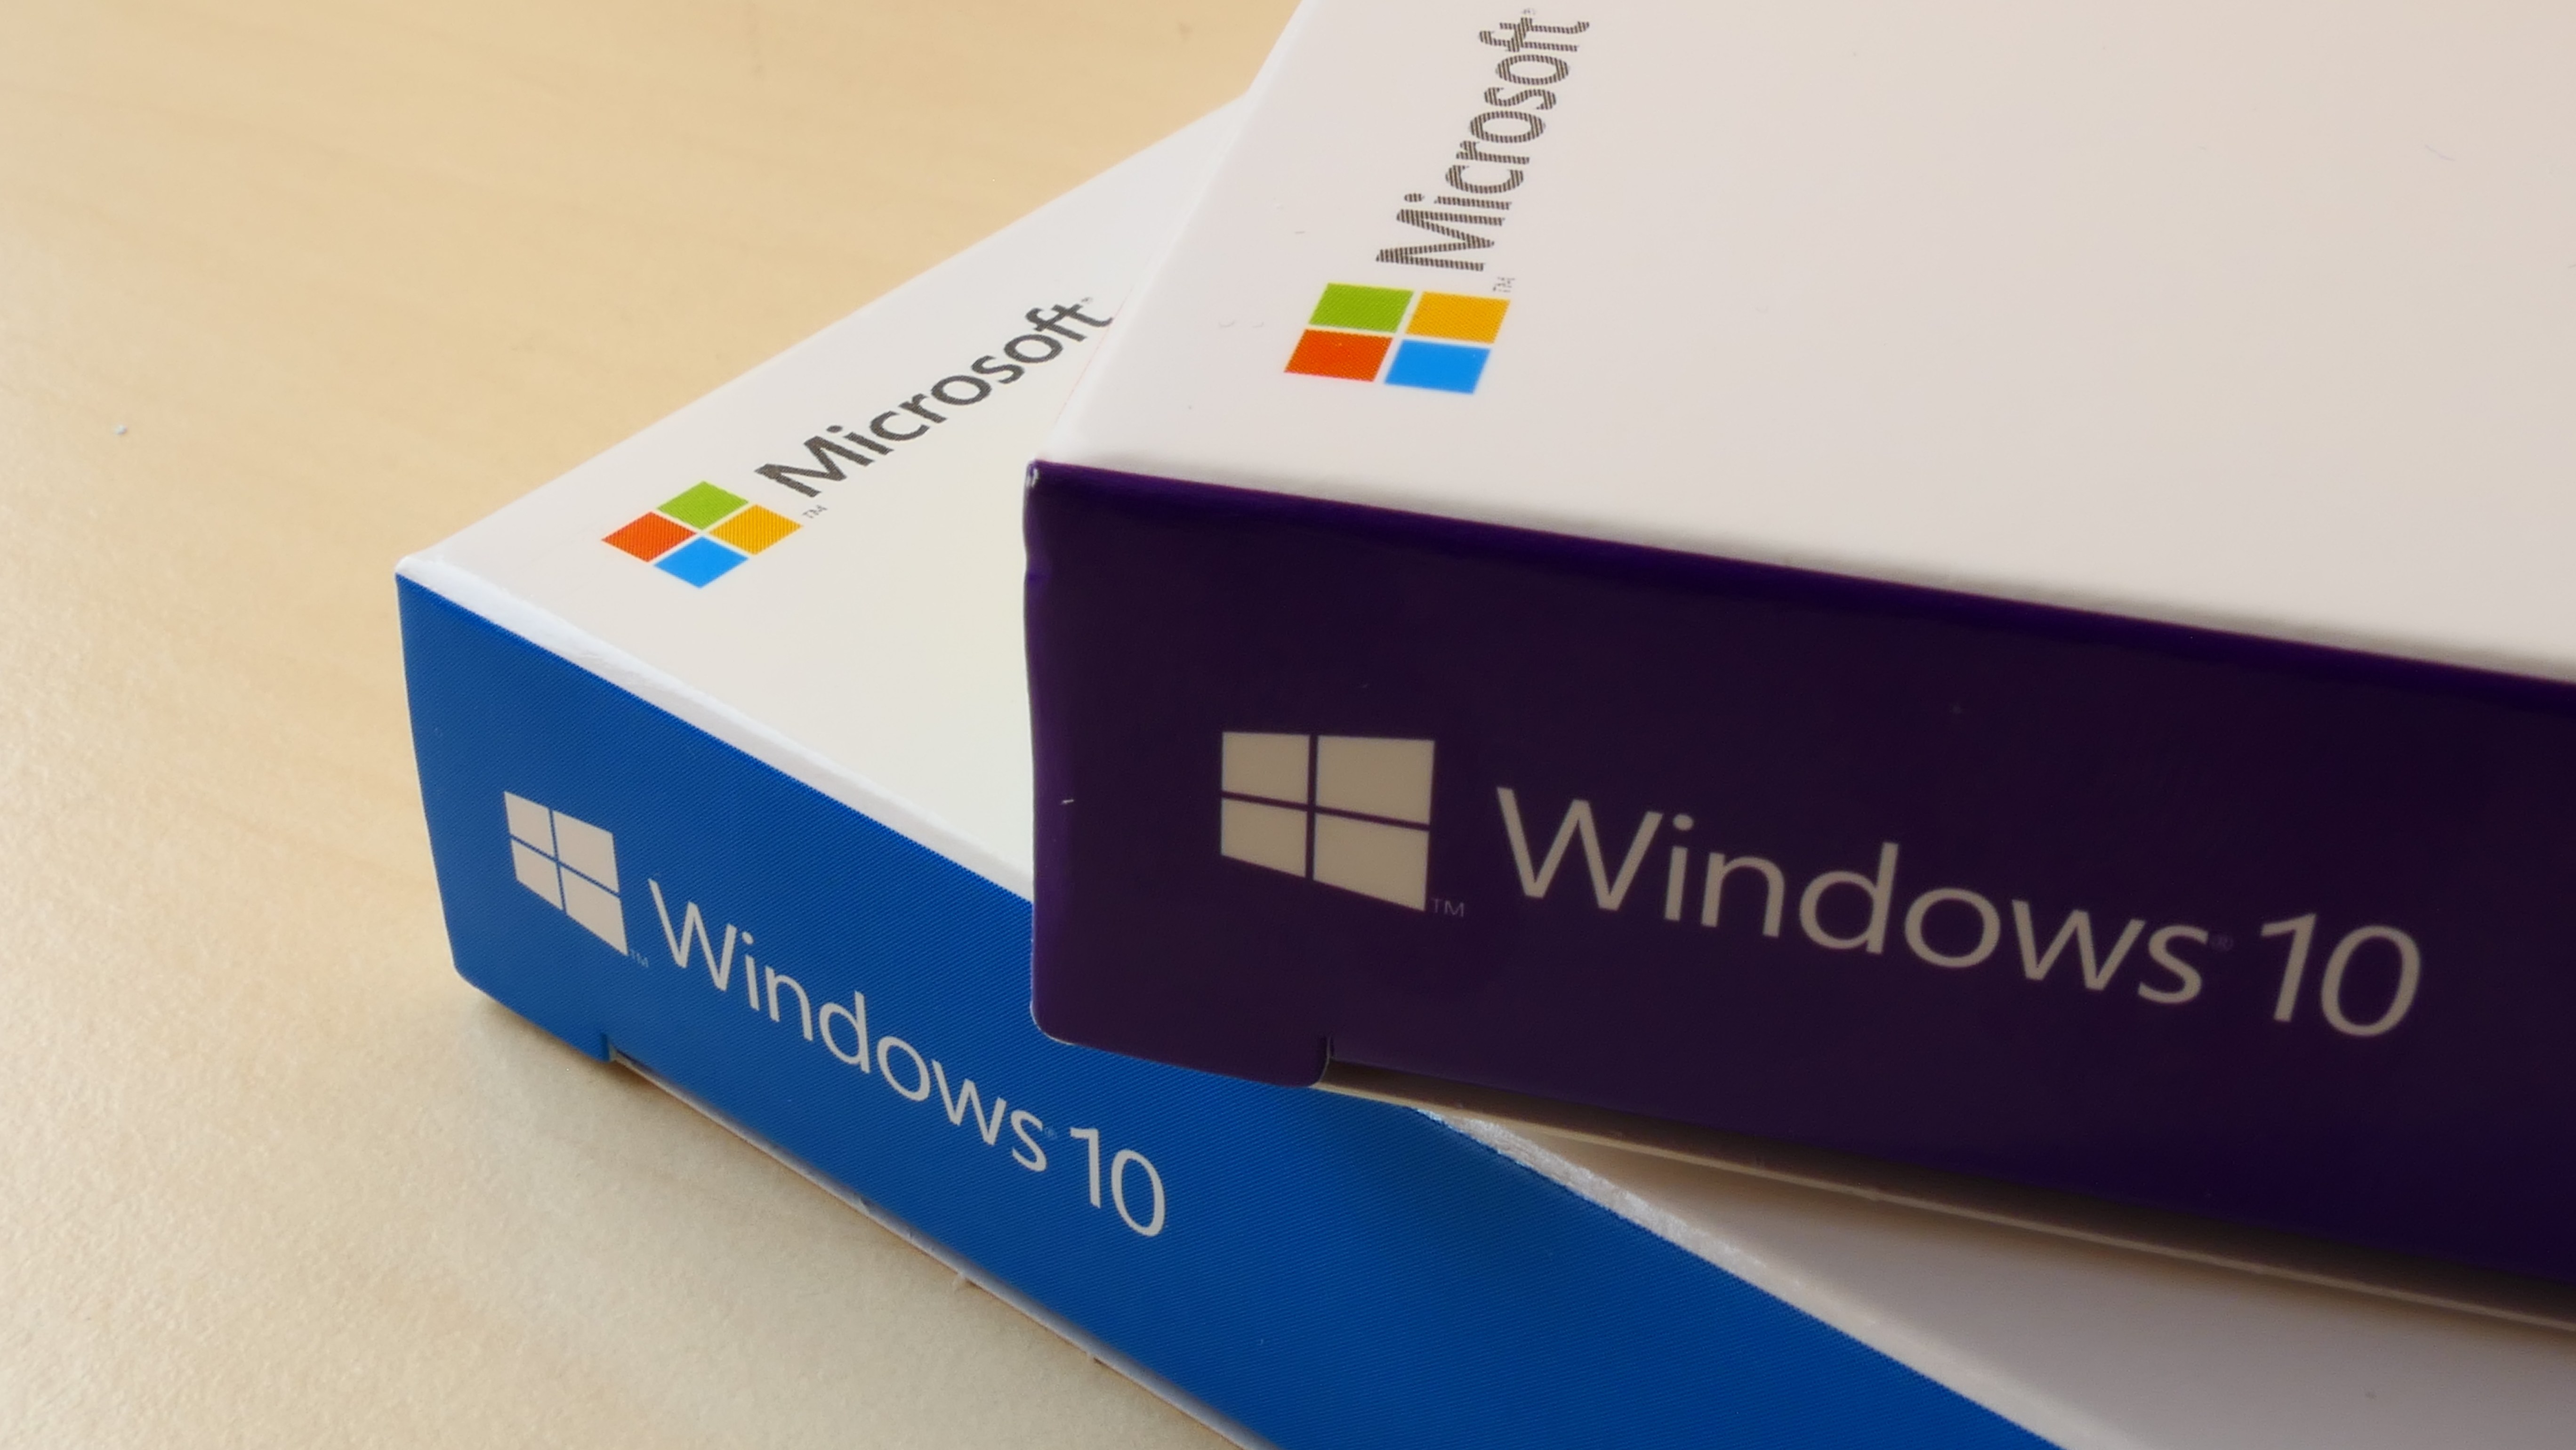 Windows 10 cherche à tout prix à vous faire utiliser un compte Microsoft